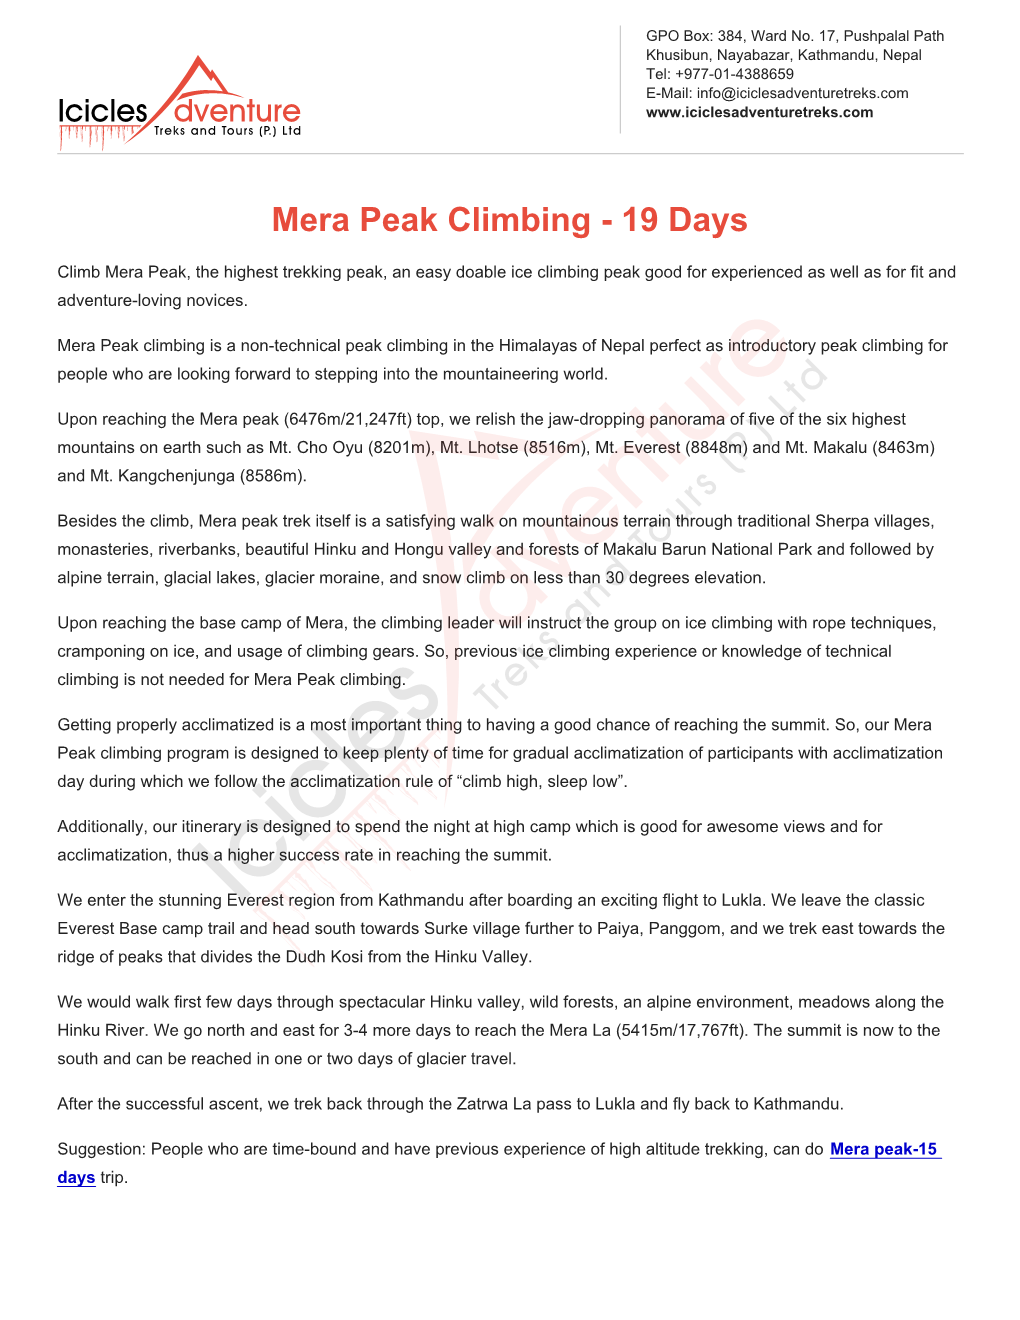 Mera Peak Climbing - 19 Days